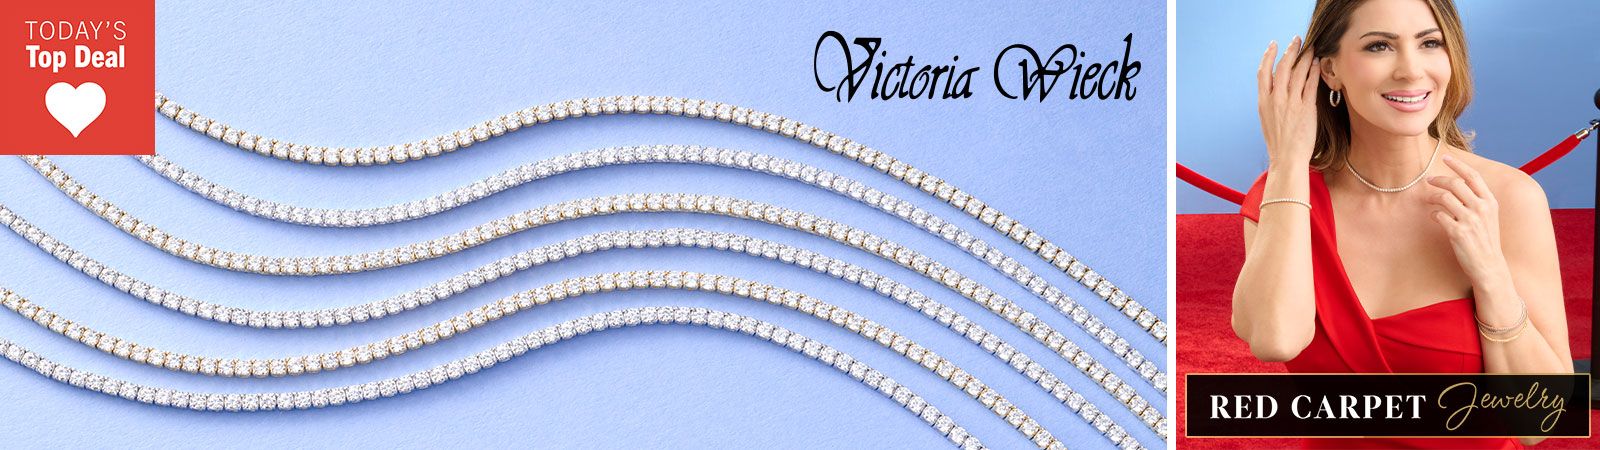 212-984 Victoria Wieck for Brilliante® Simulated Diamond Tennis Necklace